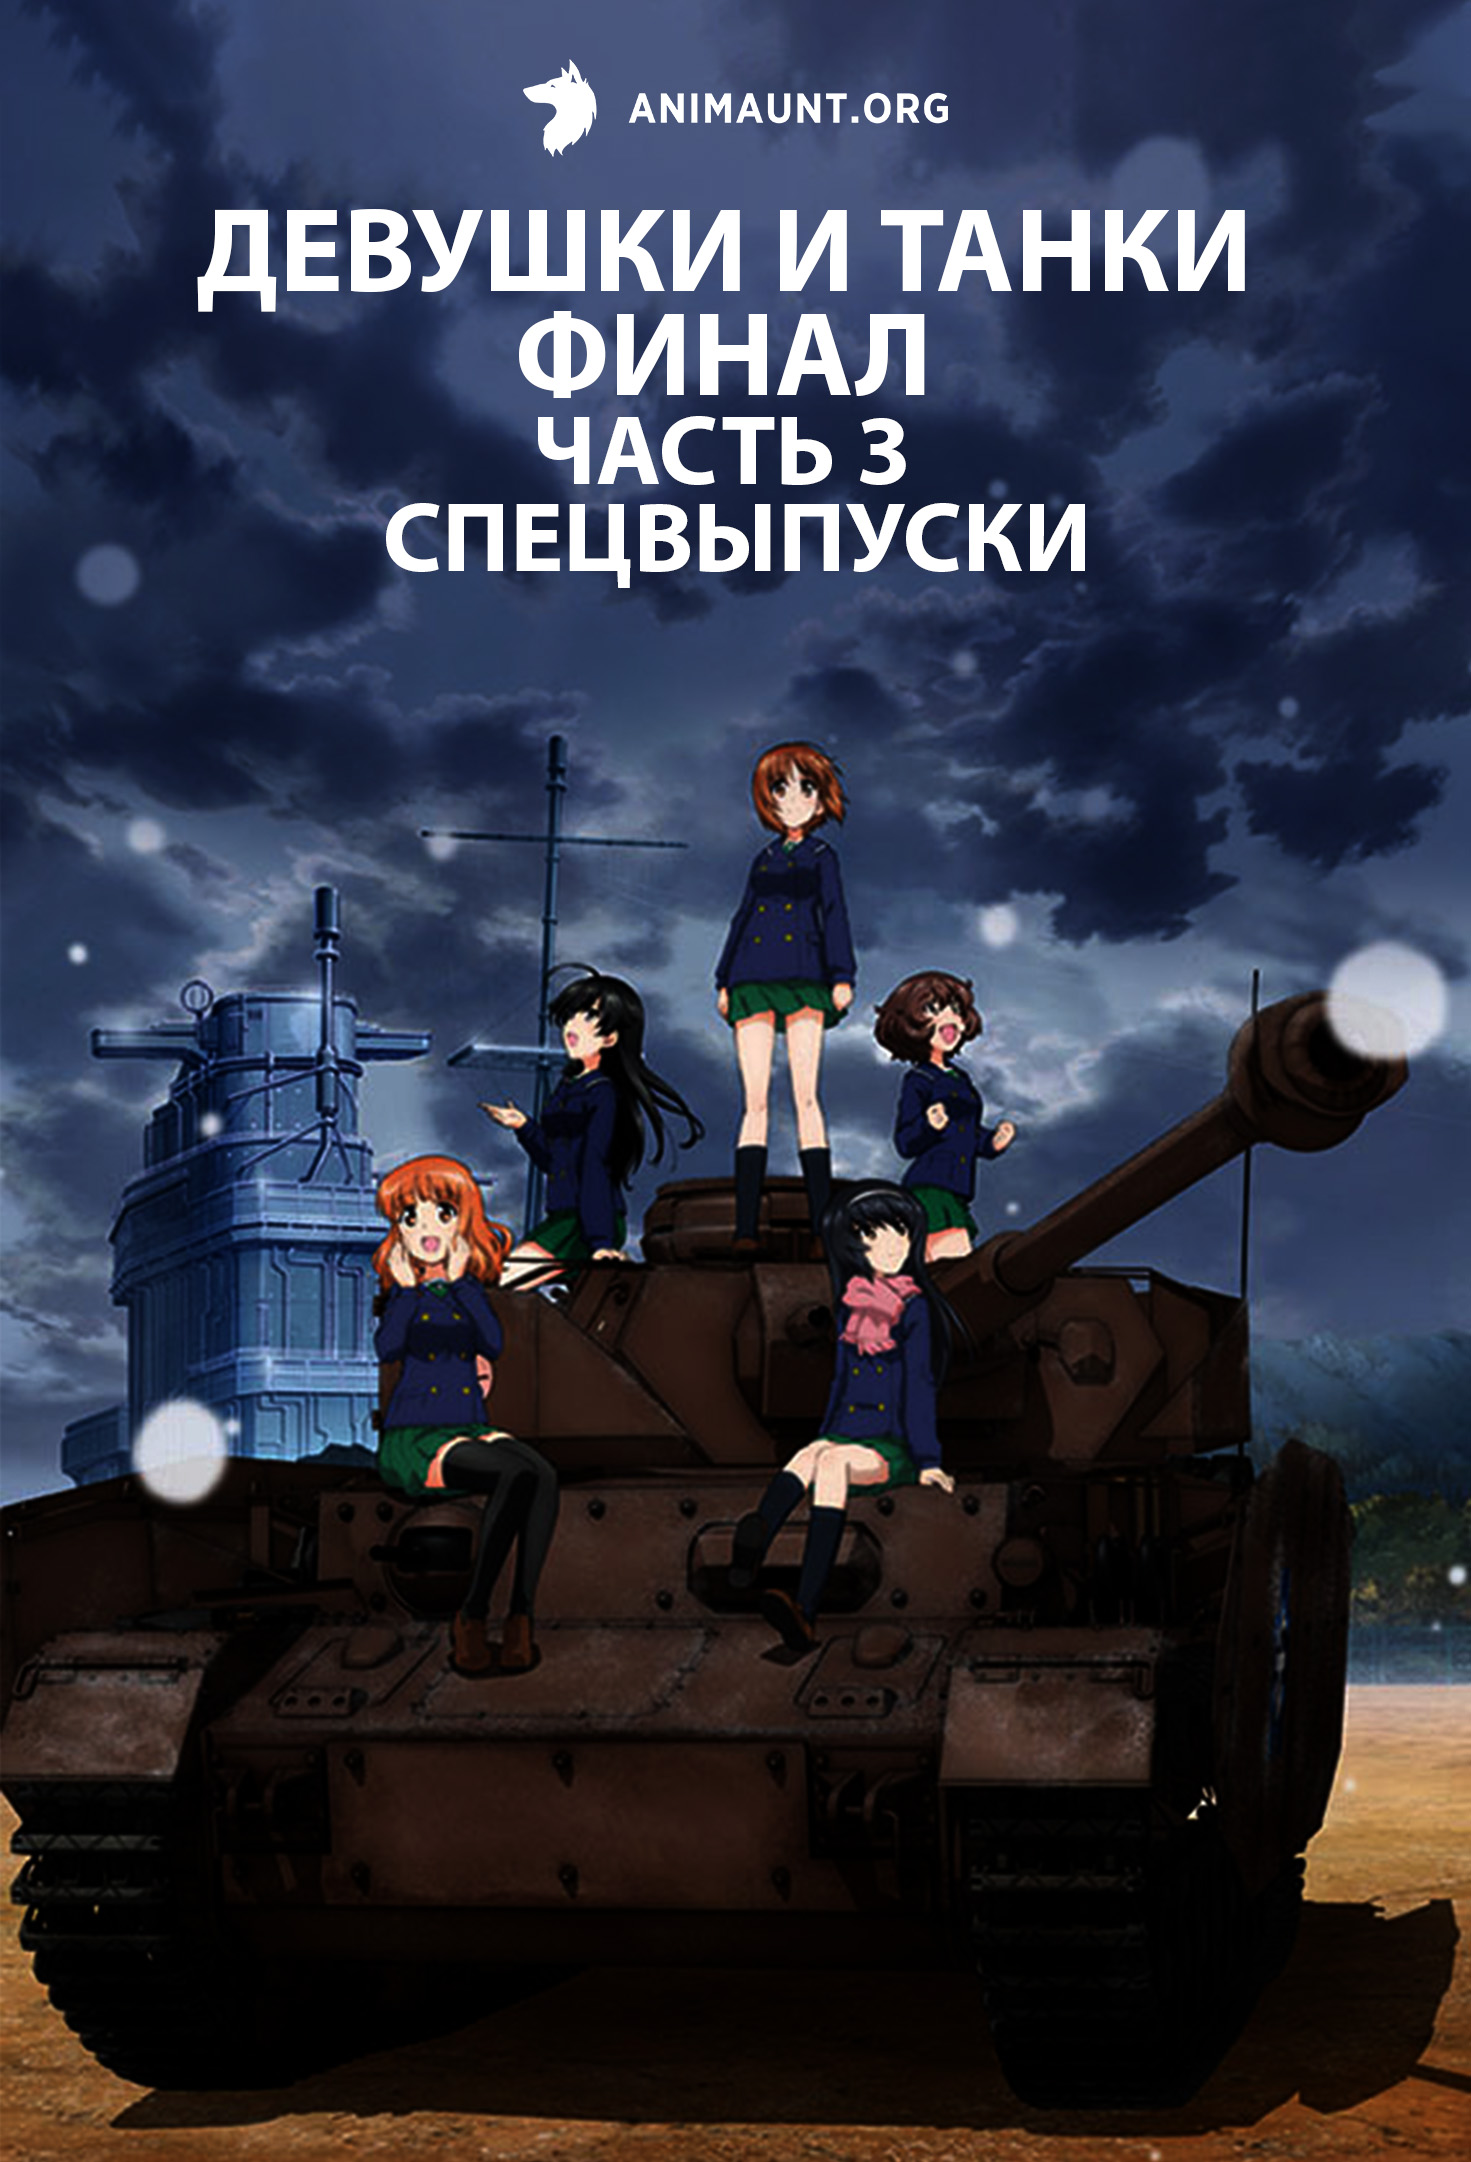 Девушки и танки: Финал. Часть 3 — Спецвыпуски